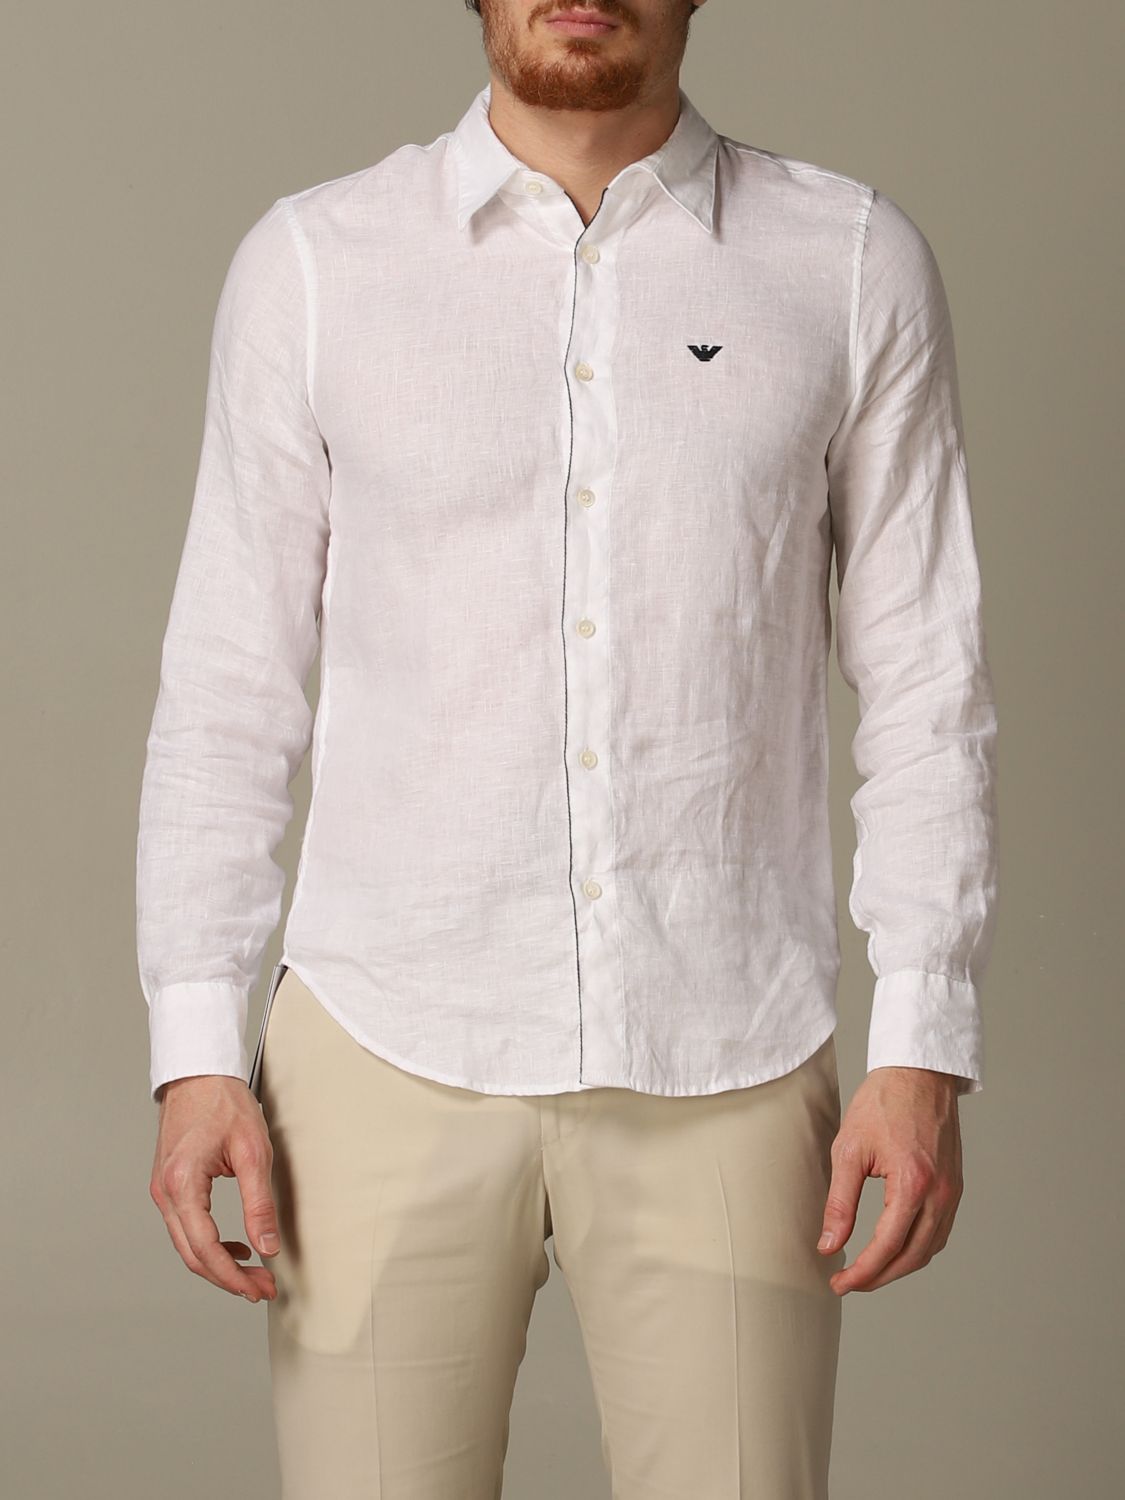 Emporio Armani Linen Shirt With Italian Collar | lupon.gov.ph